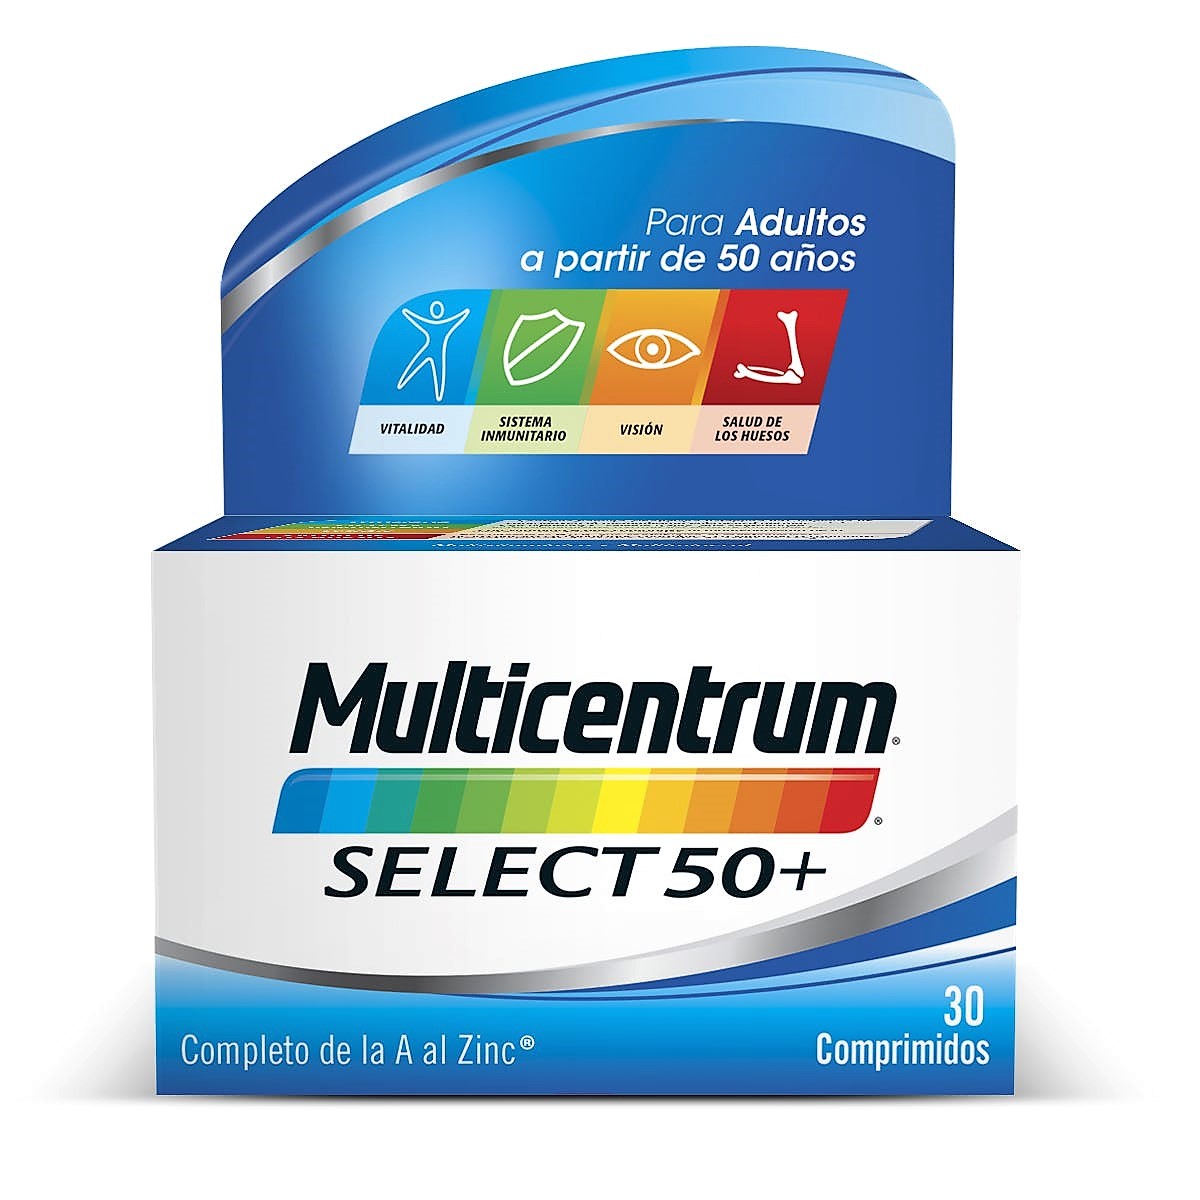 Multicentrum Select 50+ con 13 vitaminas y 11 minerales, está especialmente adaptada a las necesidades nutricionales de las personas mayores de 50 años.